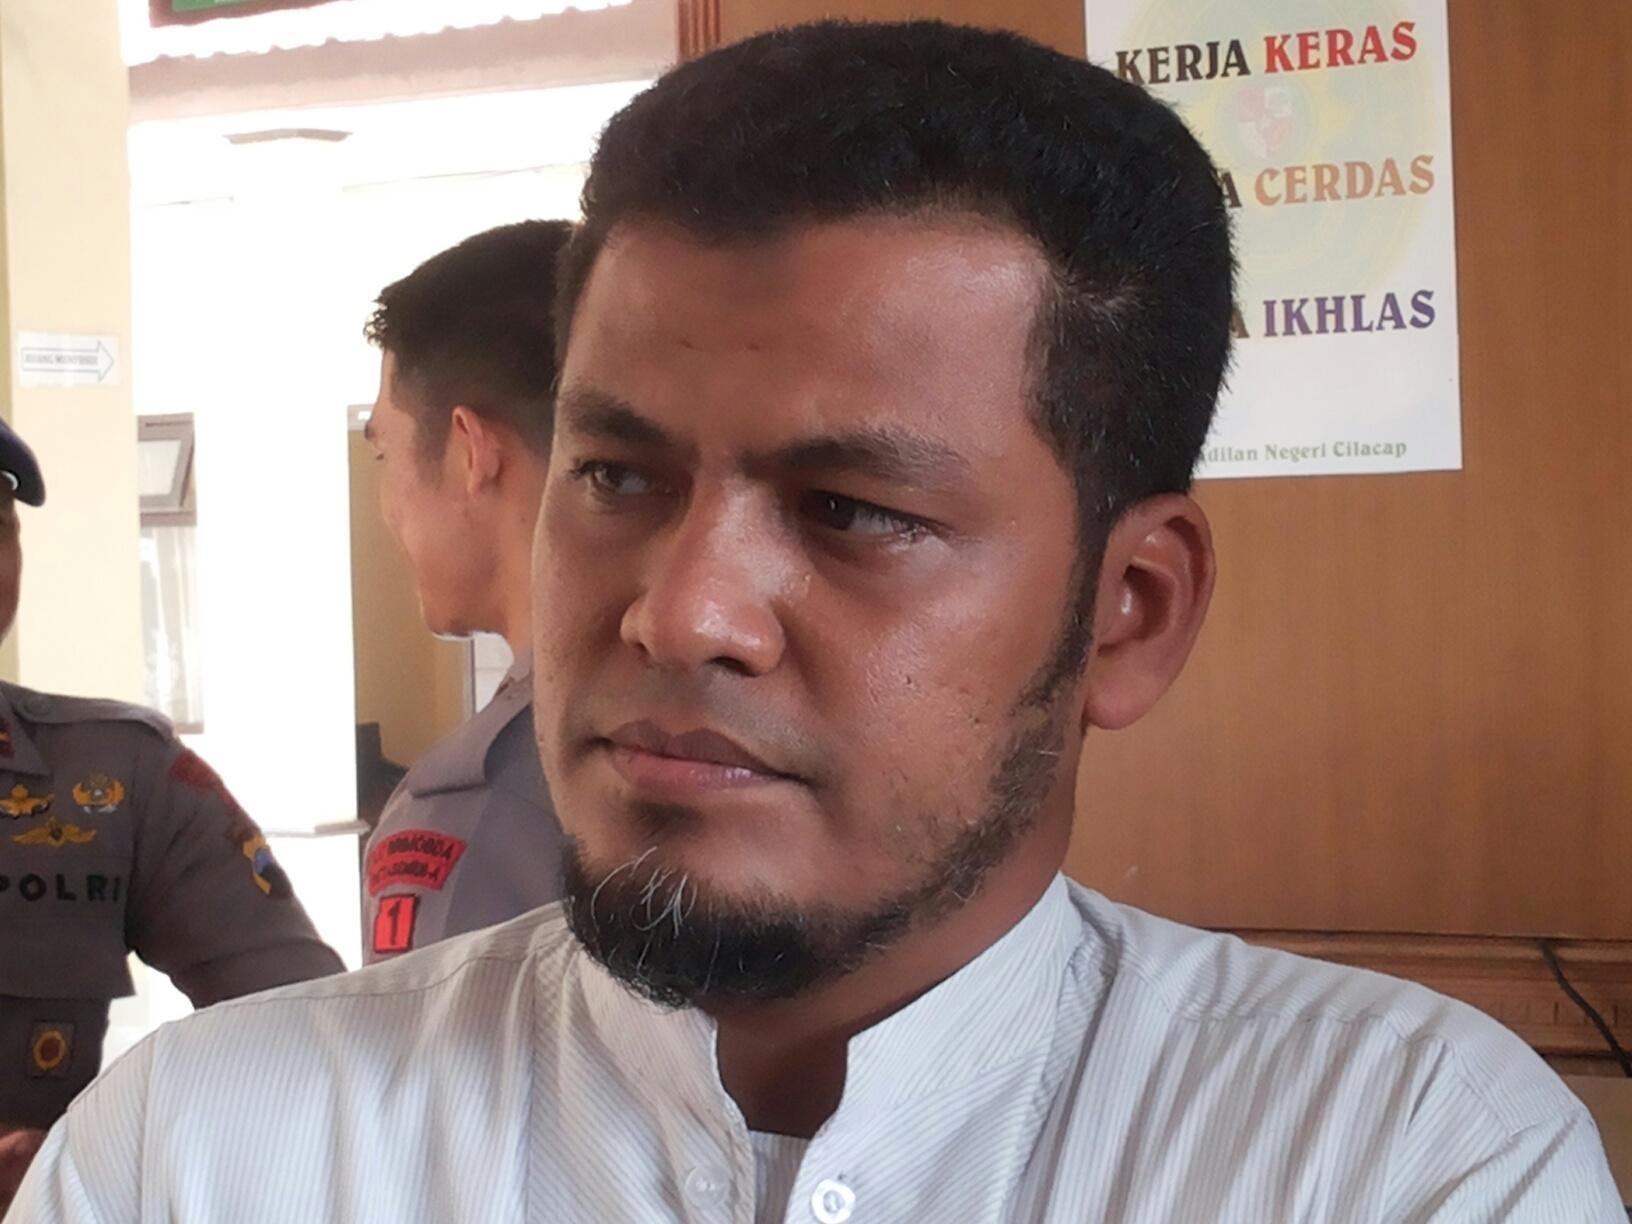 Soal Isu Ustaz Baasyir Batal Dibebaskan, Keluarga: Kami Belum Terima Informasi Resmi